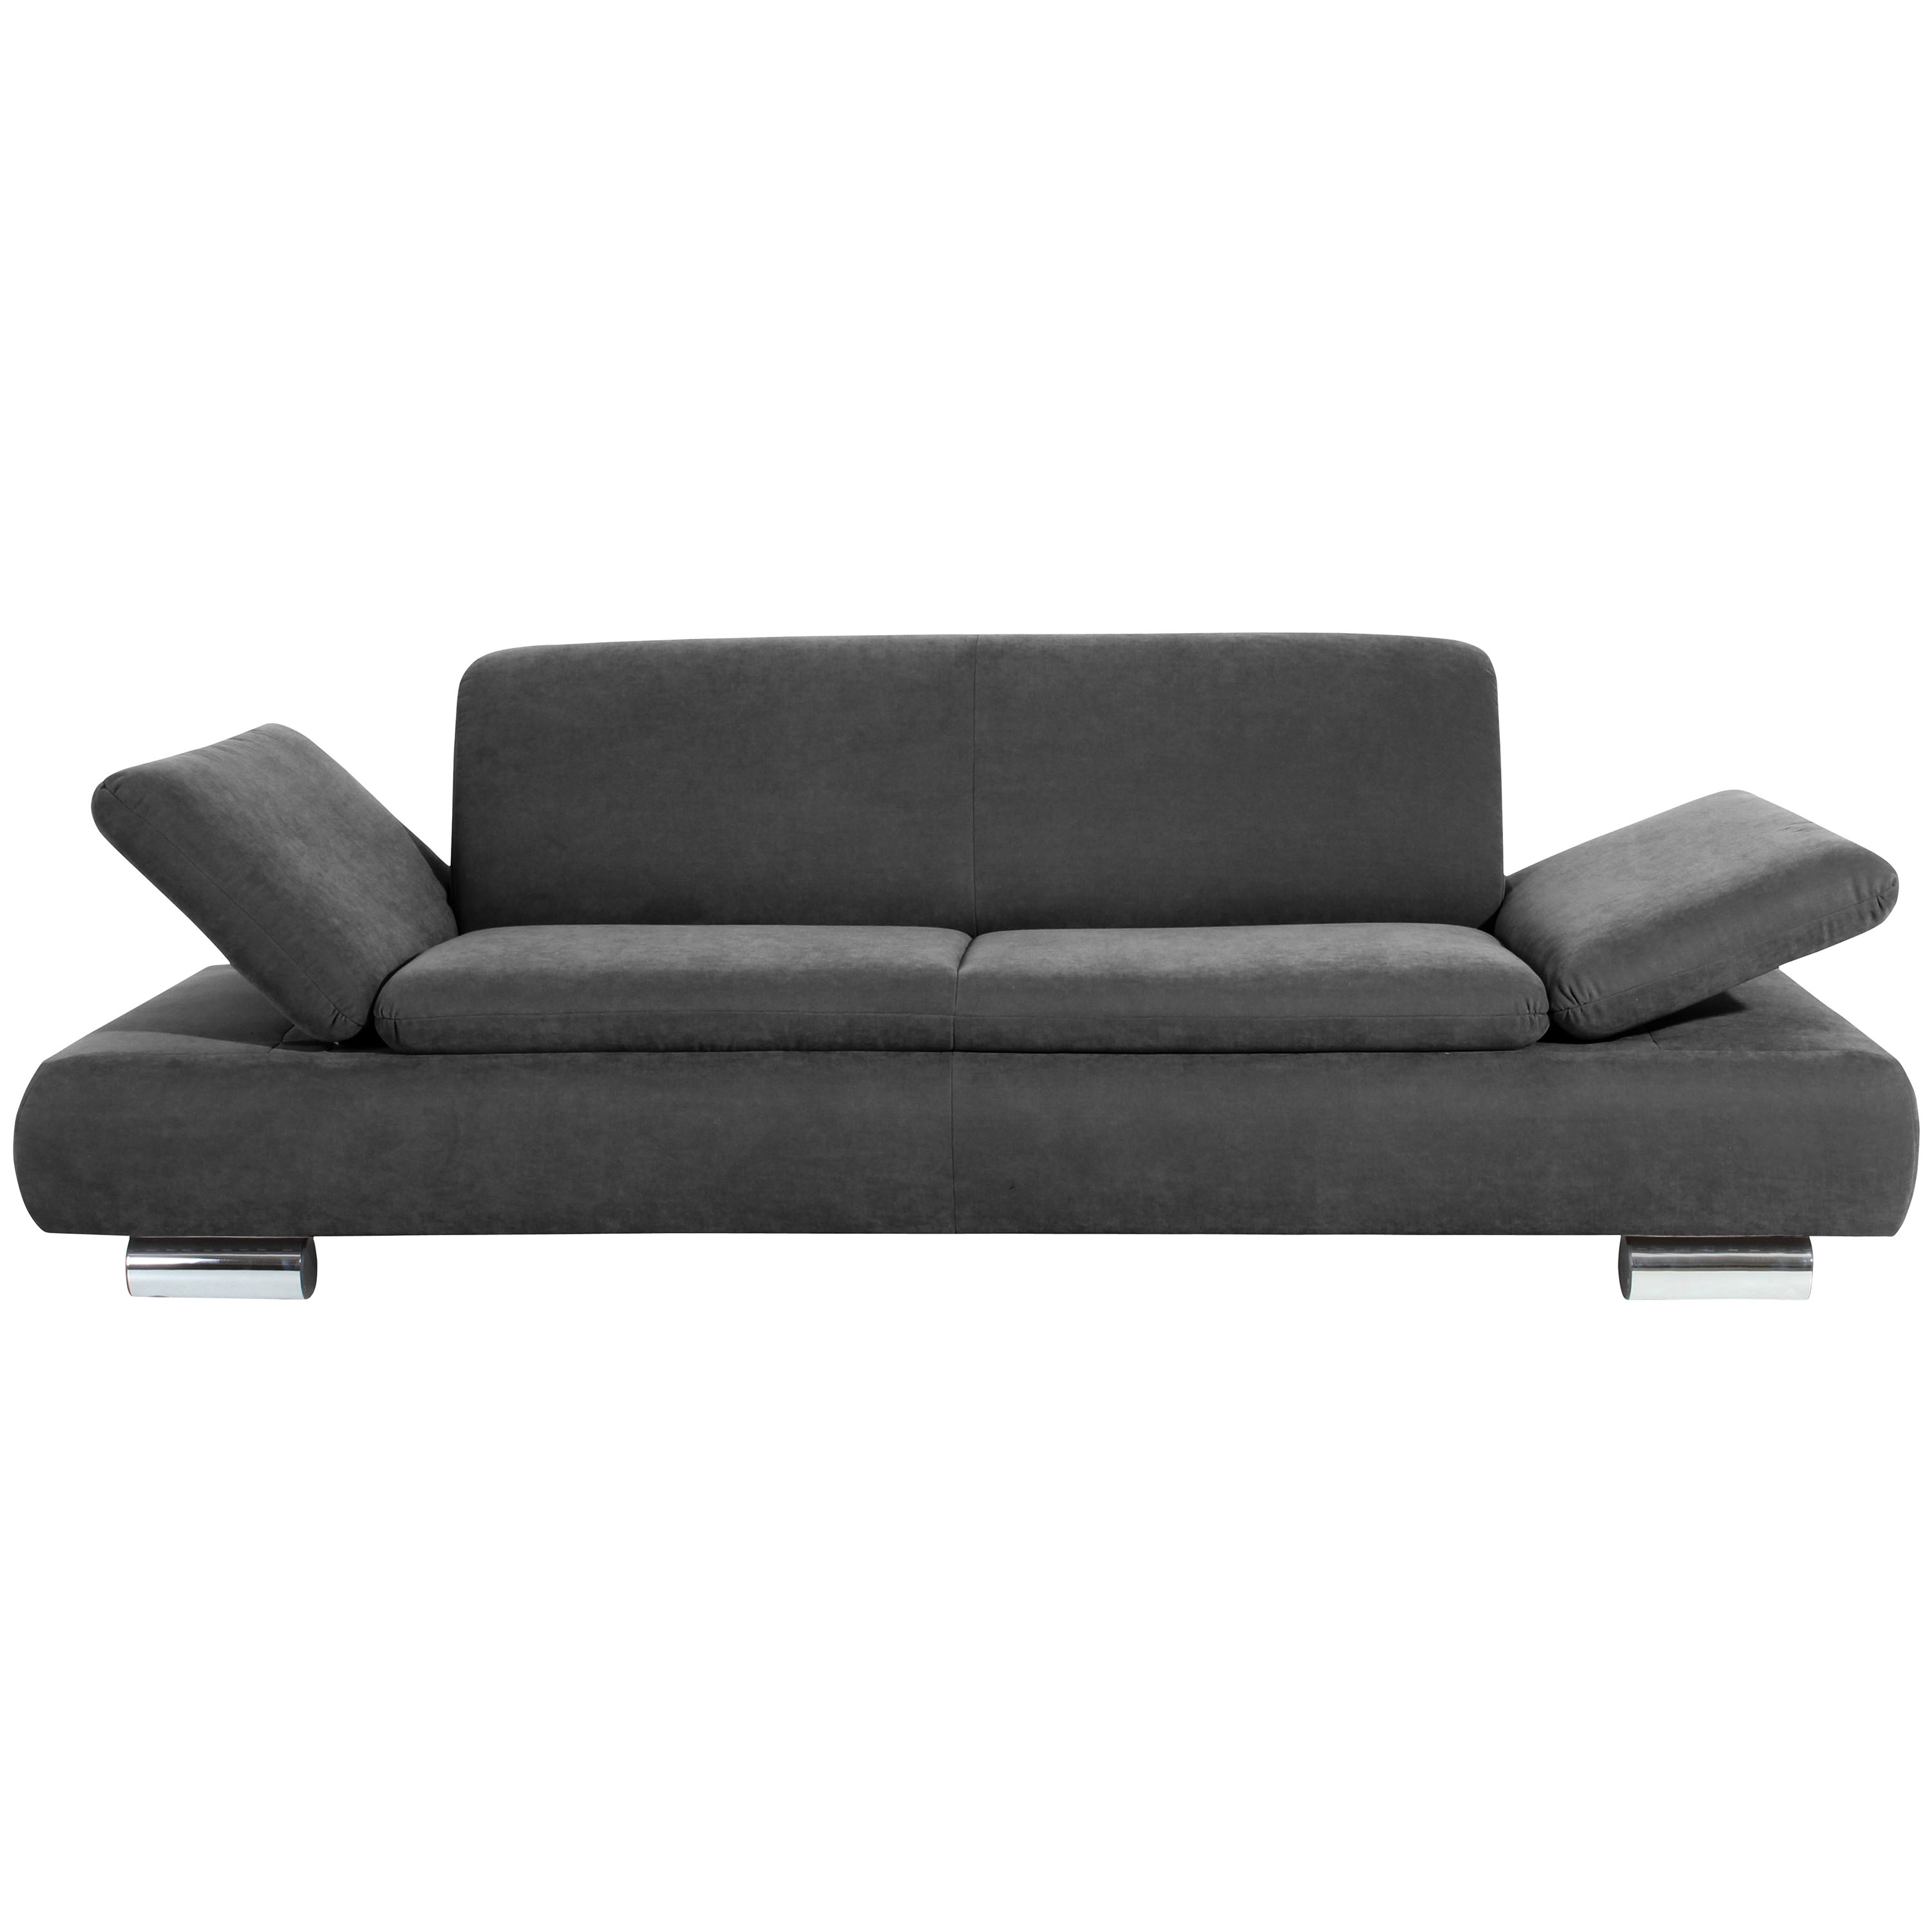 frontansicht von einem 2,5-sitzer sofa in anthrazit mit hochgeklappten armteilen und verchromten metallfüssen